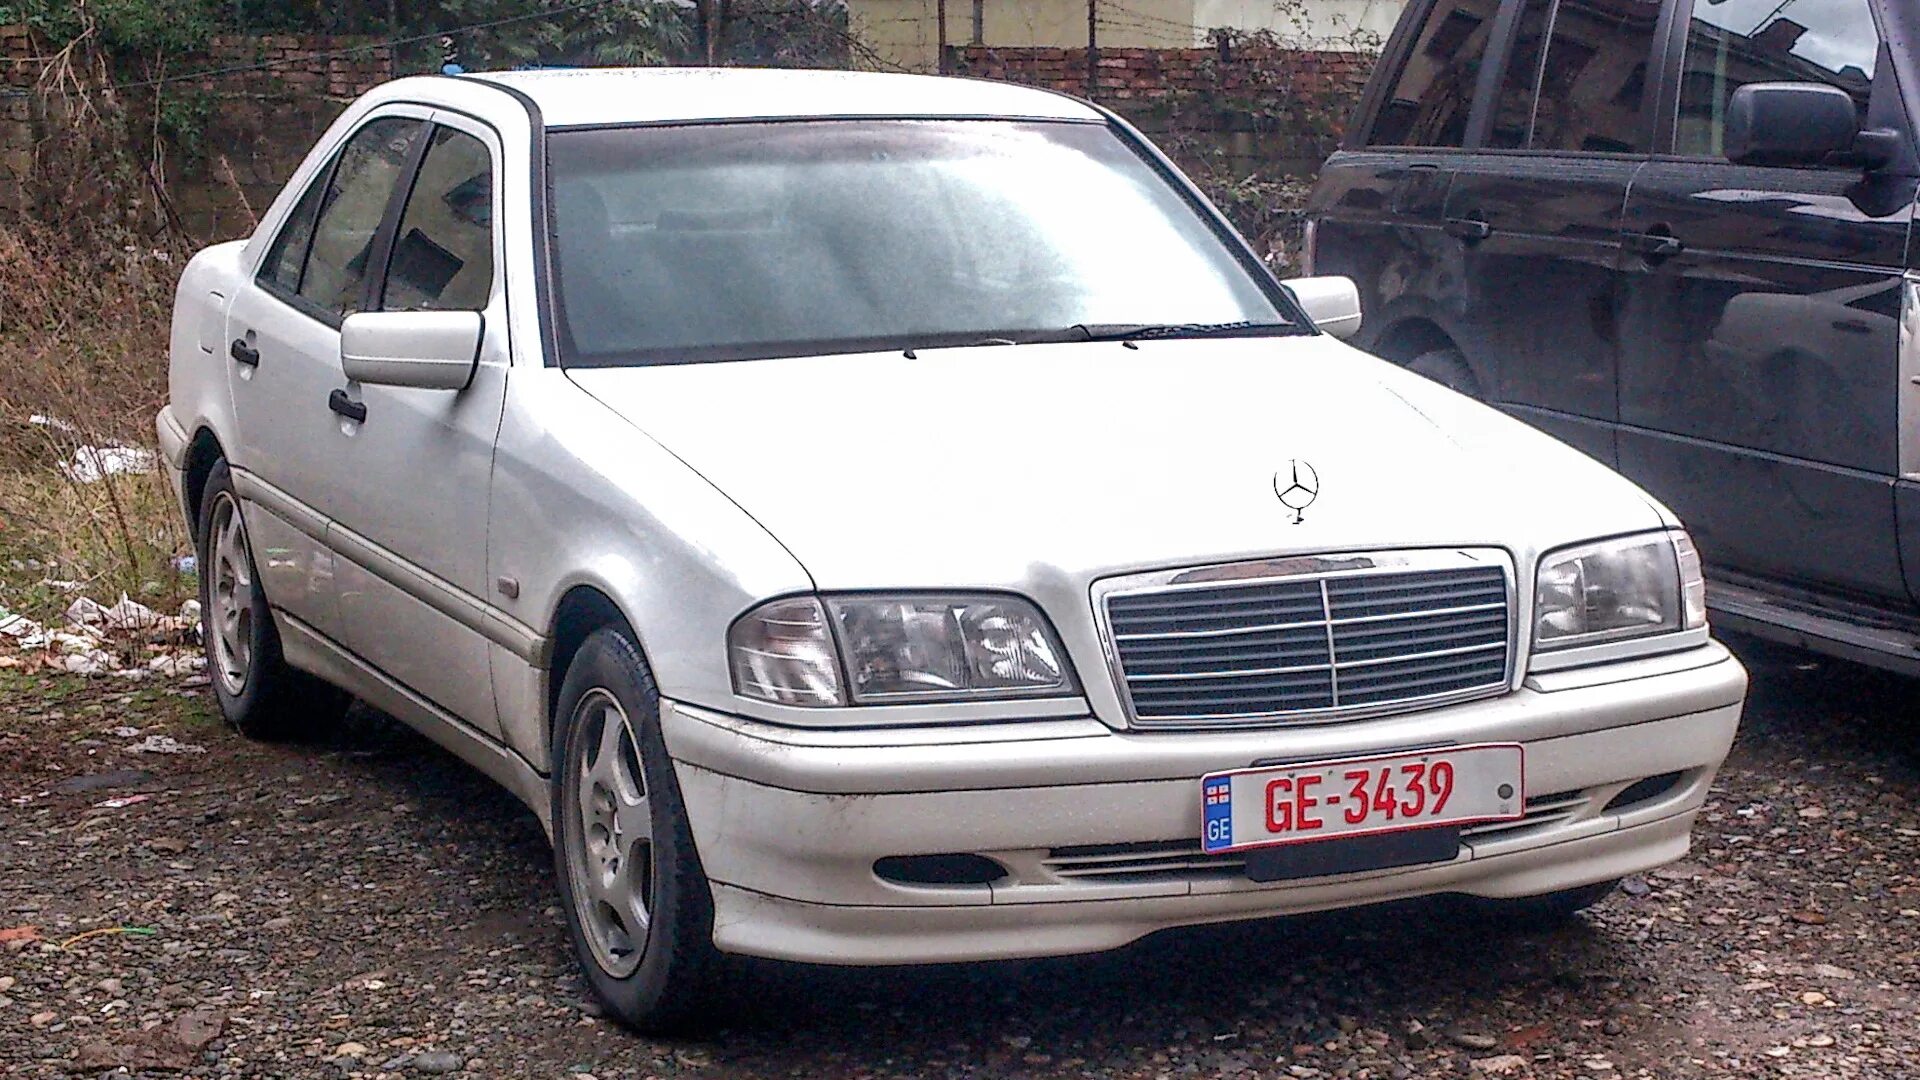 Мерседес 1998 купи. Mercedes c 1998. Mercedes Benz 1998 c2. Мерседес 1998 года. Мерс c 1998 года.